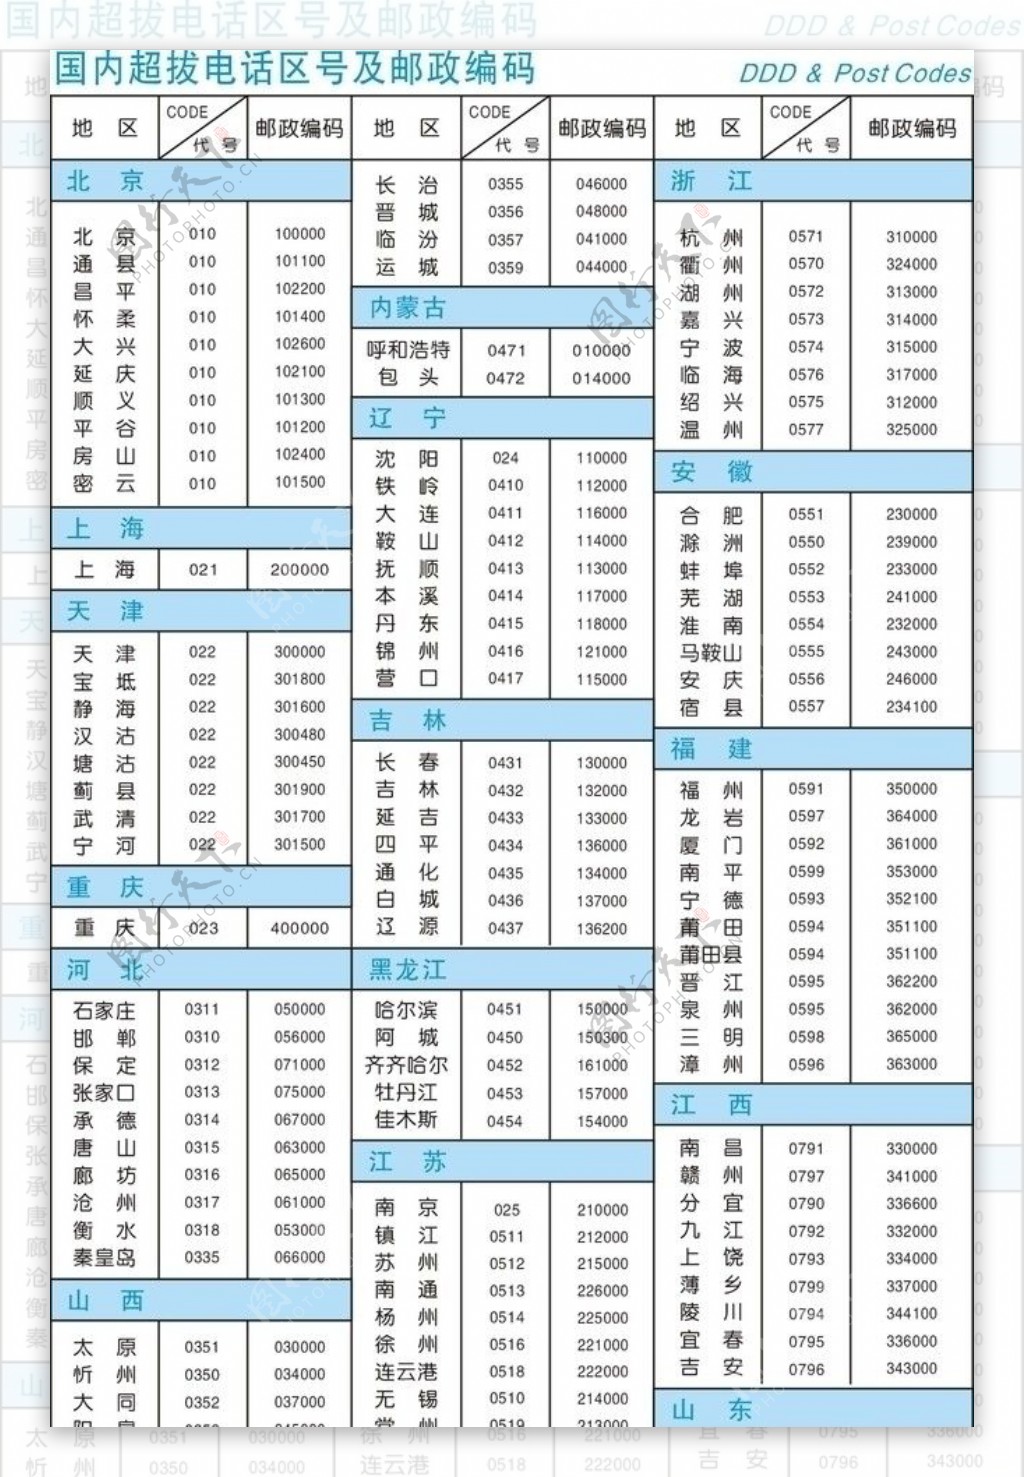 中国电话区号及邮政编码图片